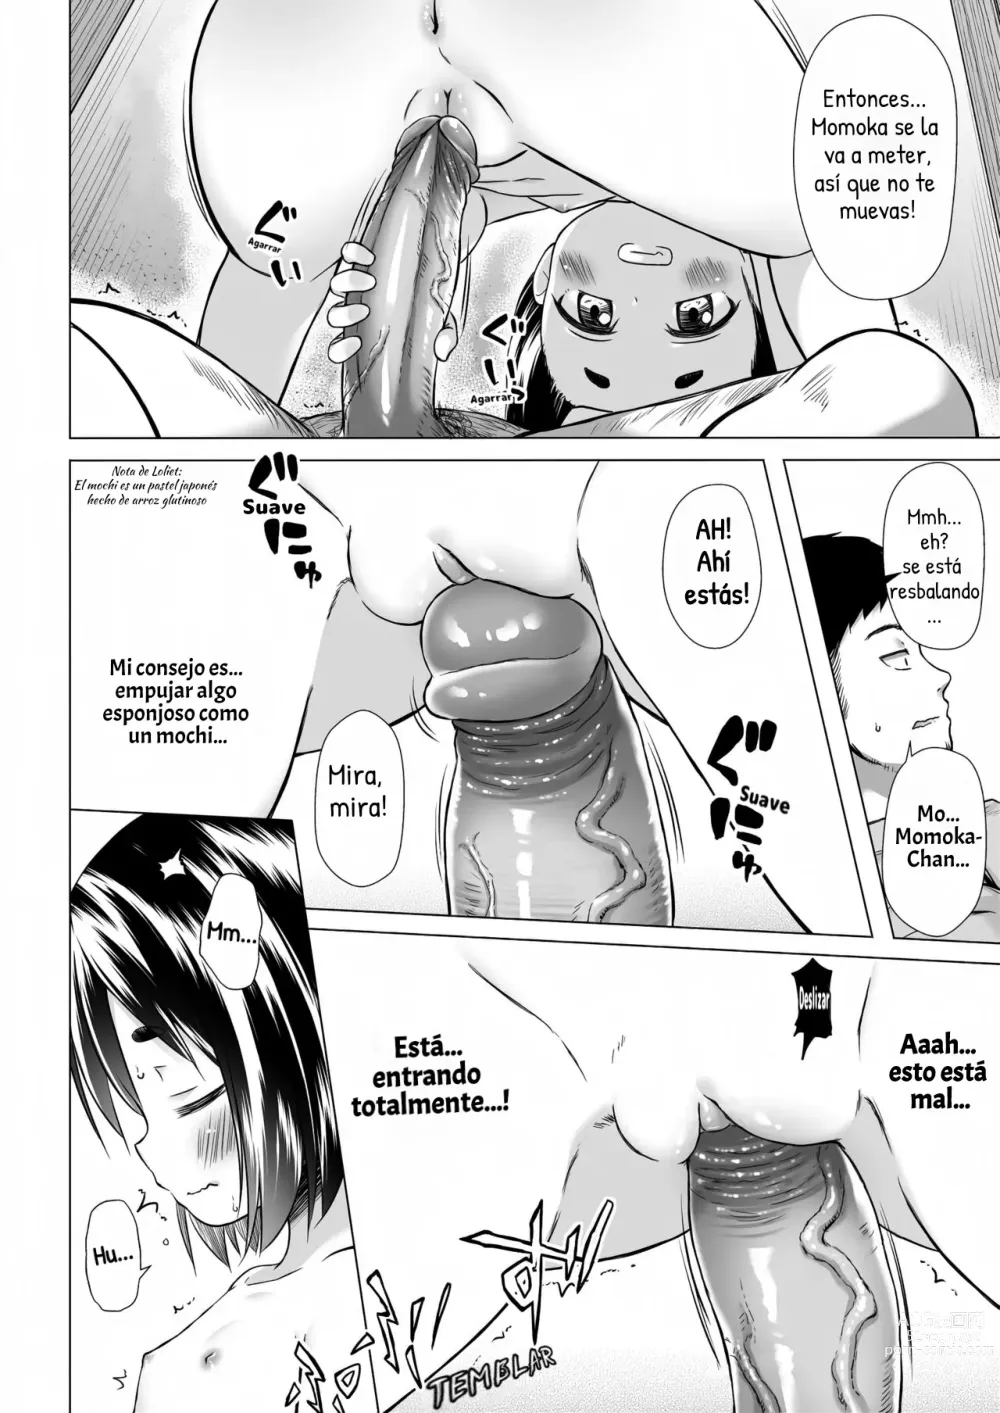 Page 9 of doujinshi Momoka-chan-chi no Jijou